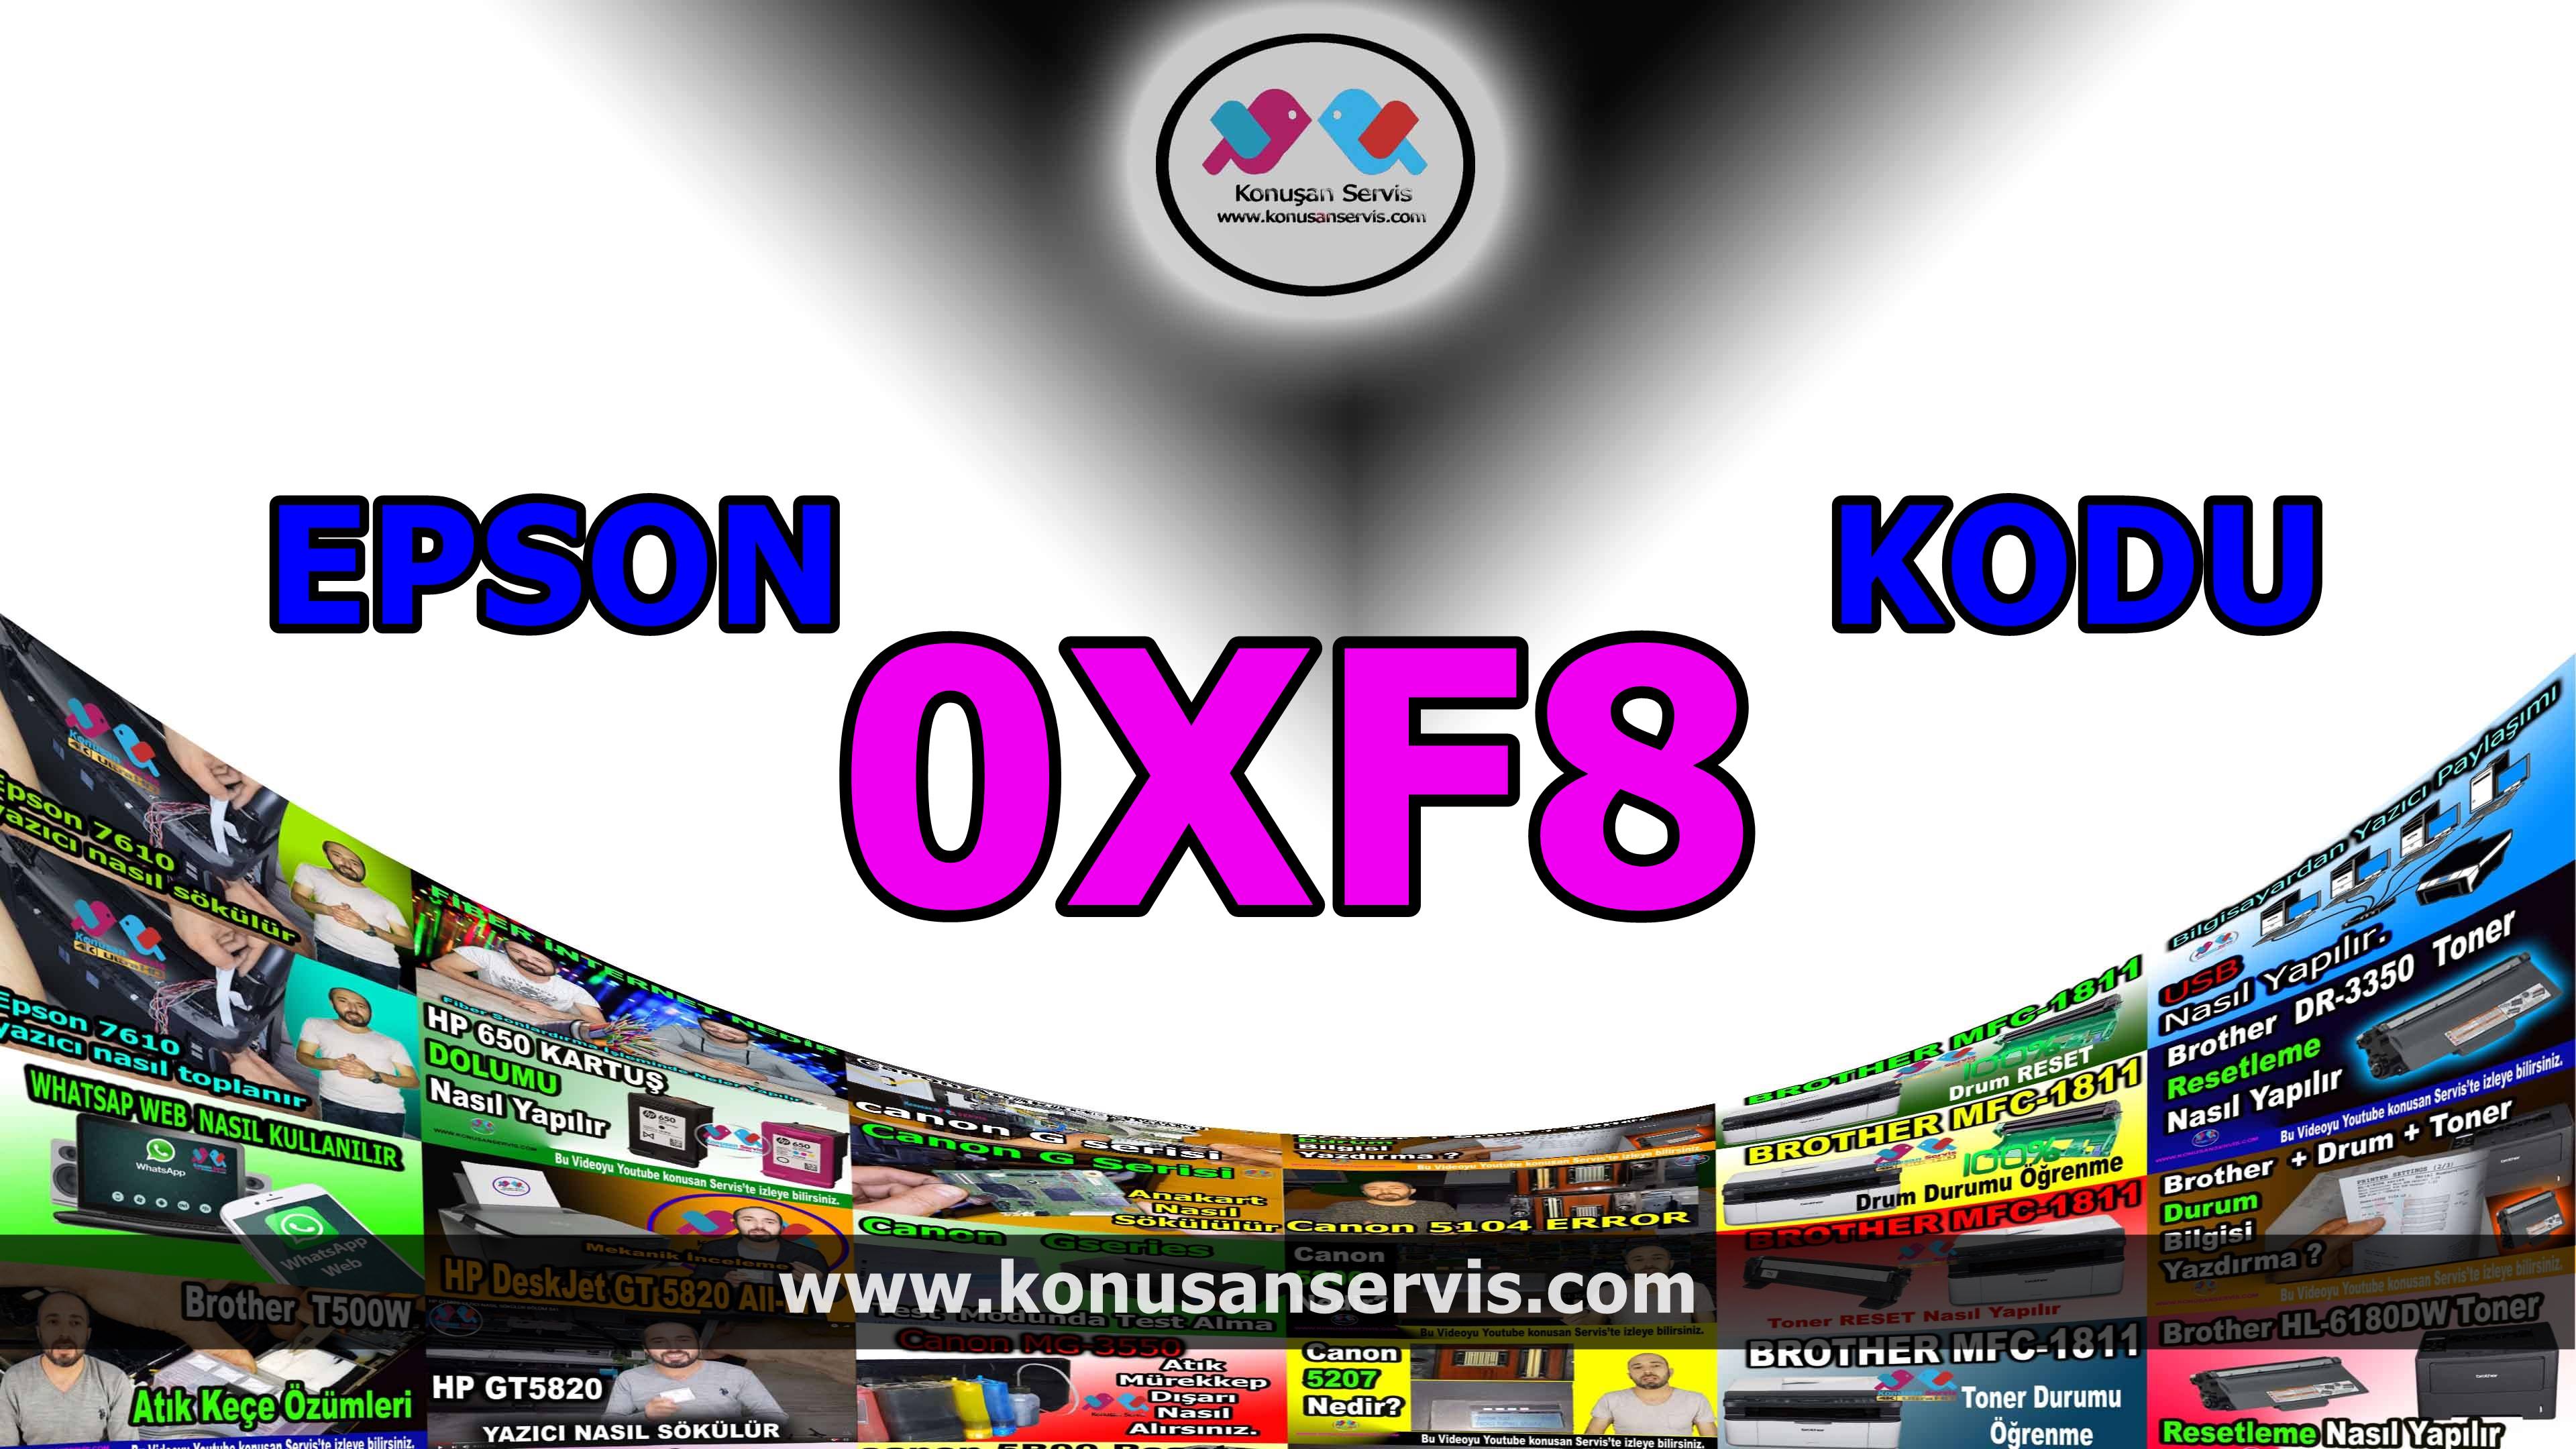 Epson 0xF8 Yazıcı Hata Kodlari Ve Çözümleri